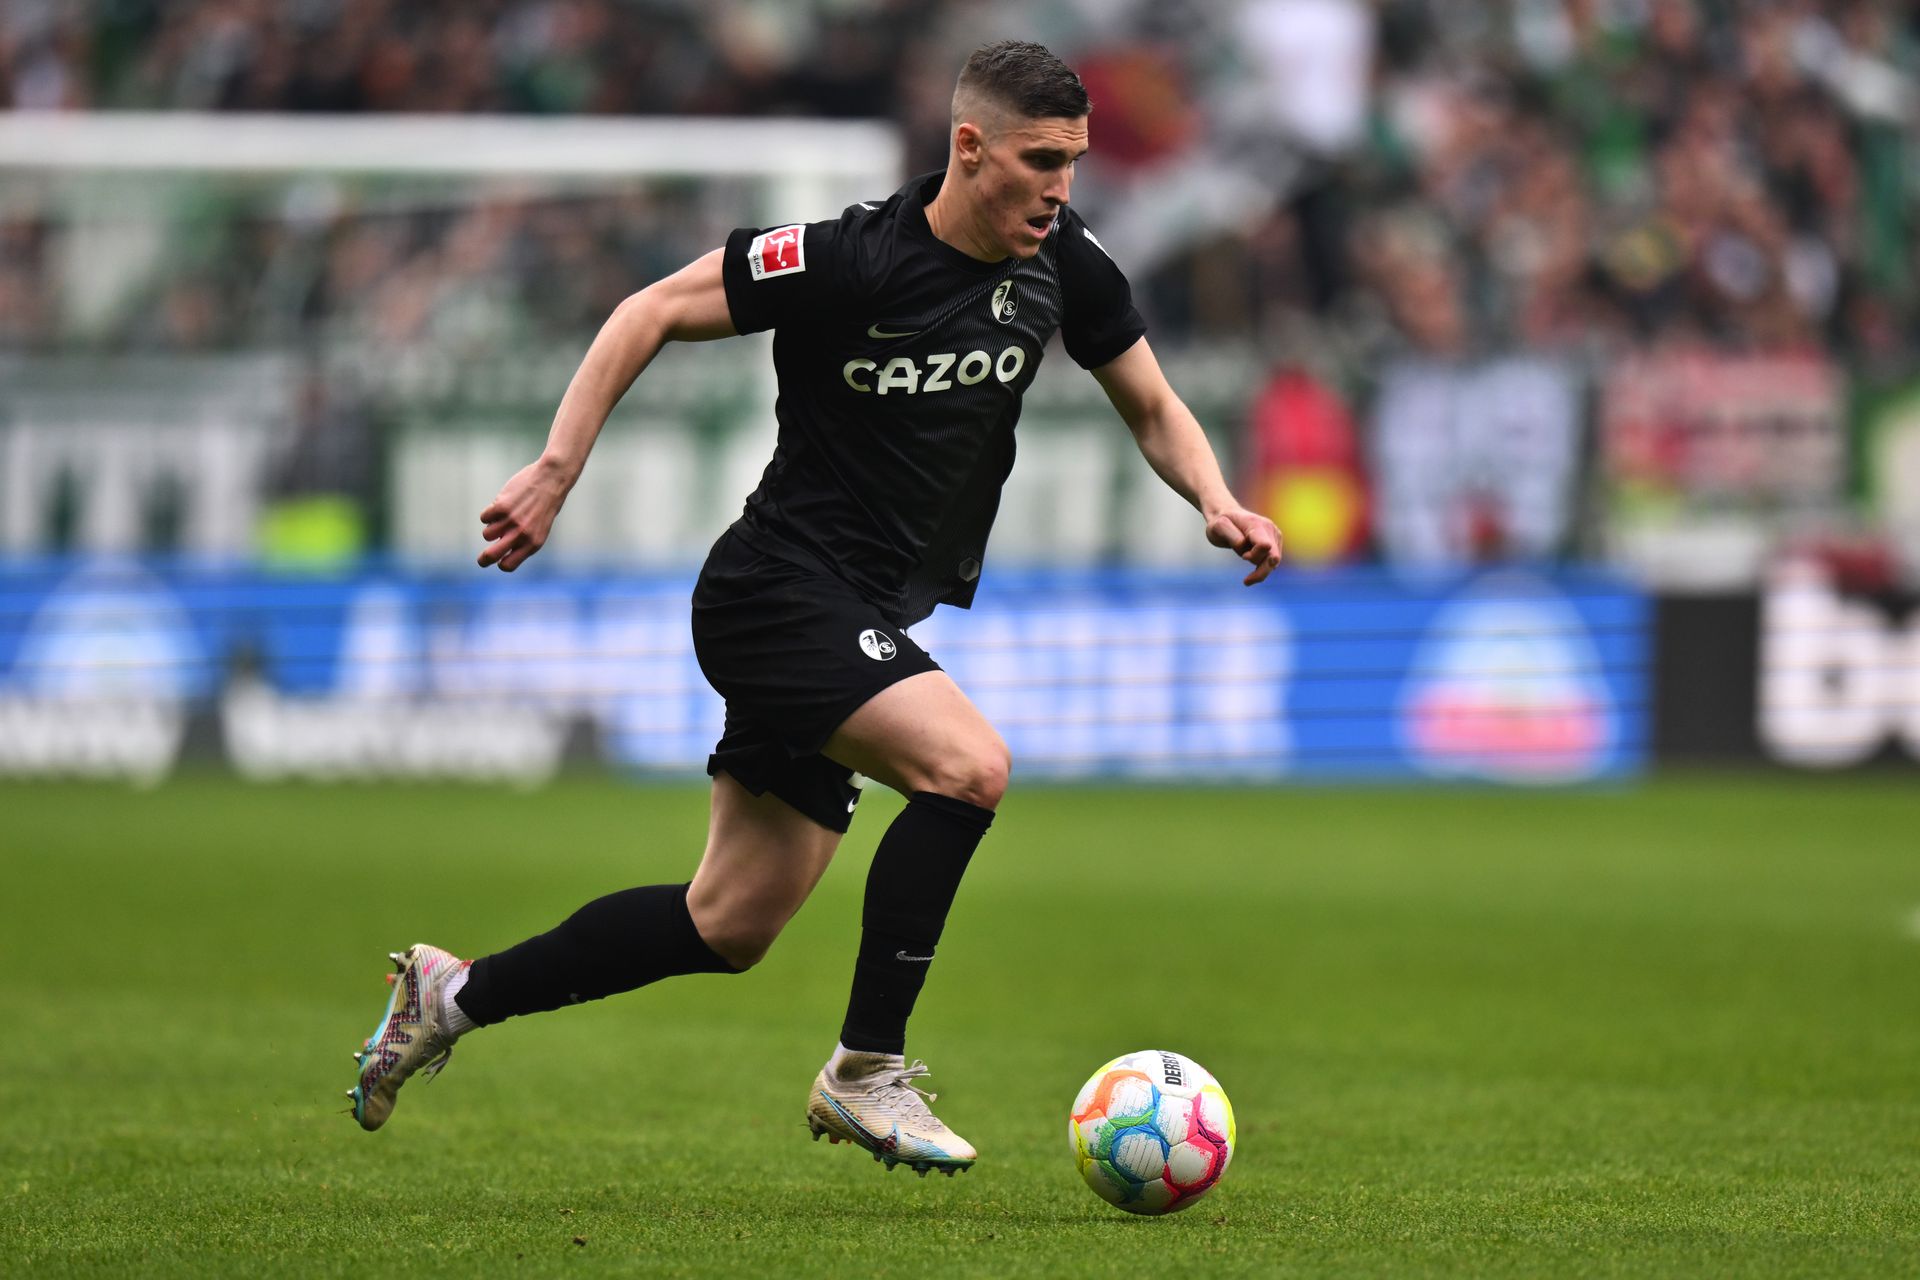 Sallai Rolandnak zaklatott idénye volt Freiburgban, ám a Werder Bremen elleni bajnokin így is történelmi gólt szerzett. Fotó: Getty Images